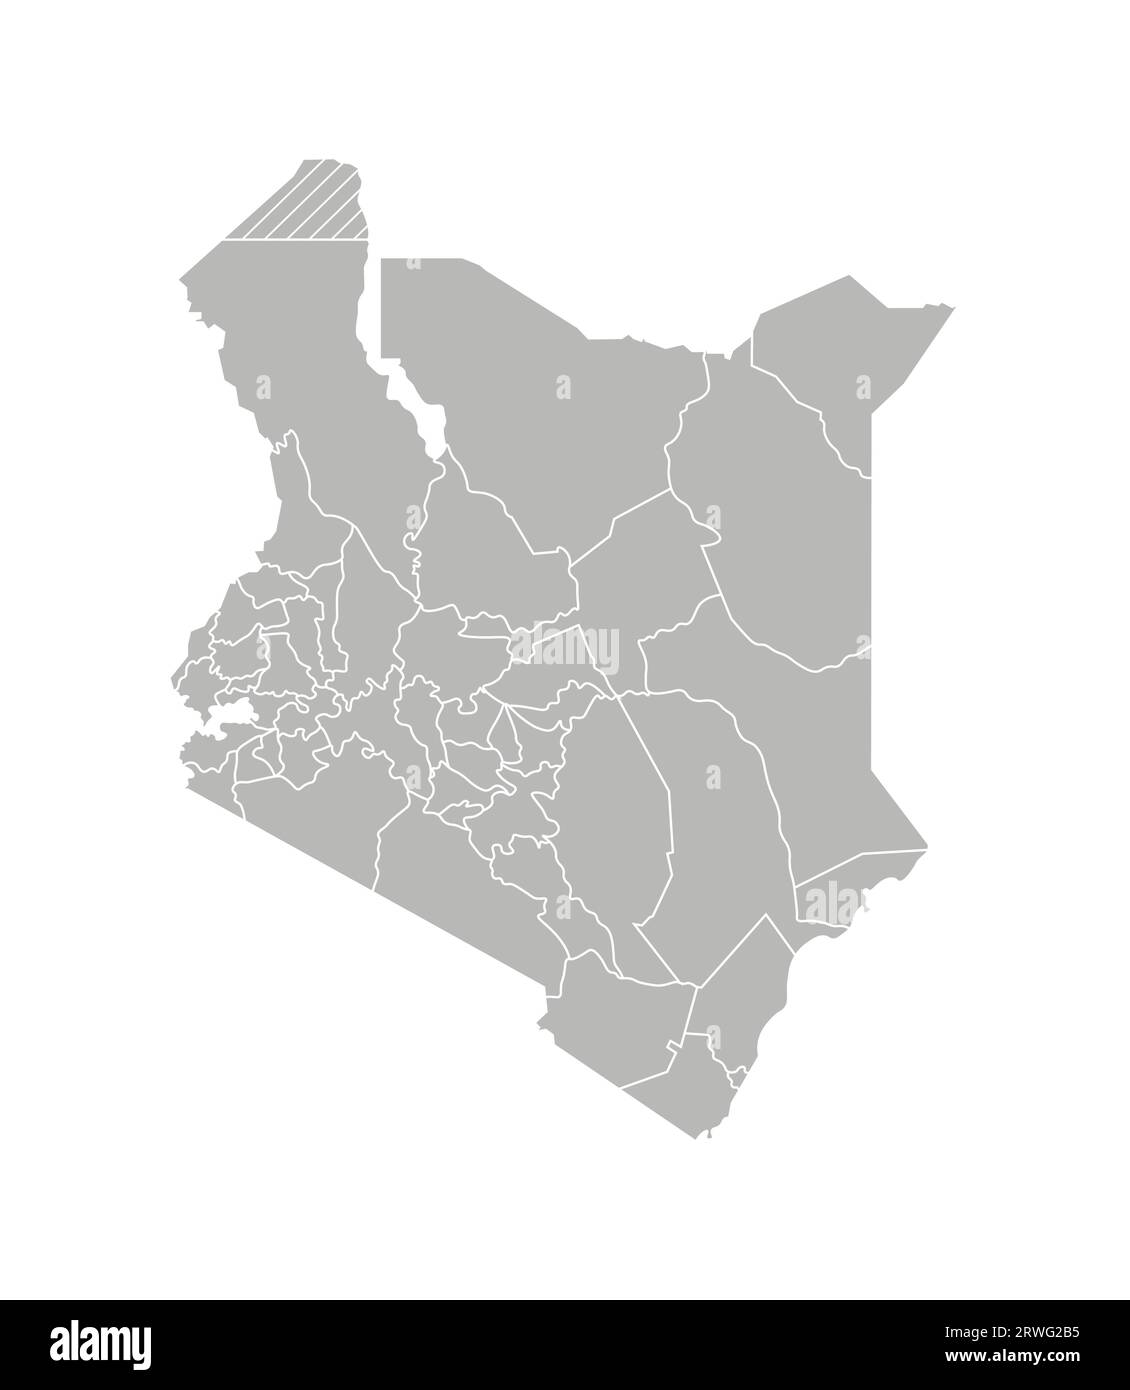 Vektorisolierte Darstellung einer vereinfachten Verwaltungskarte Kenias. Grenzen der Grafschaften (Regionen). Graue Silhouetten. Weiße Umrandung. Stock Vektor